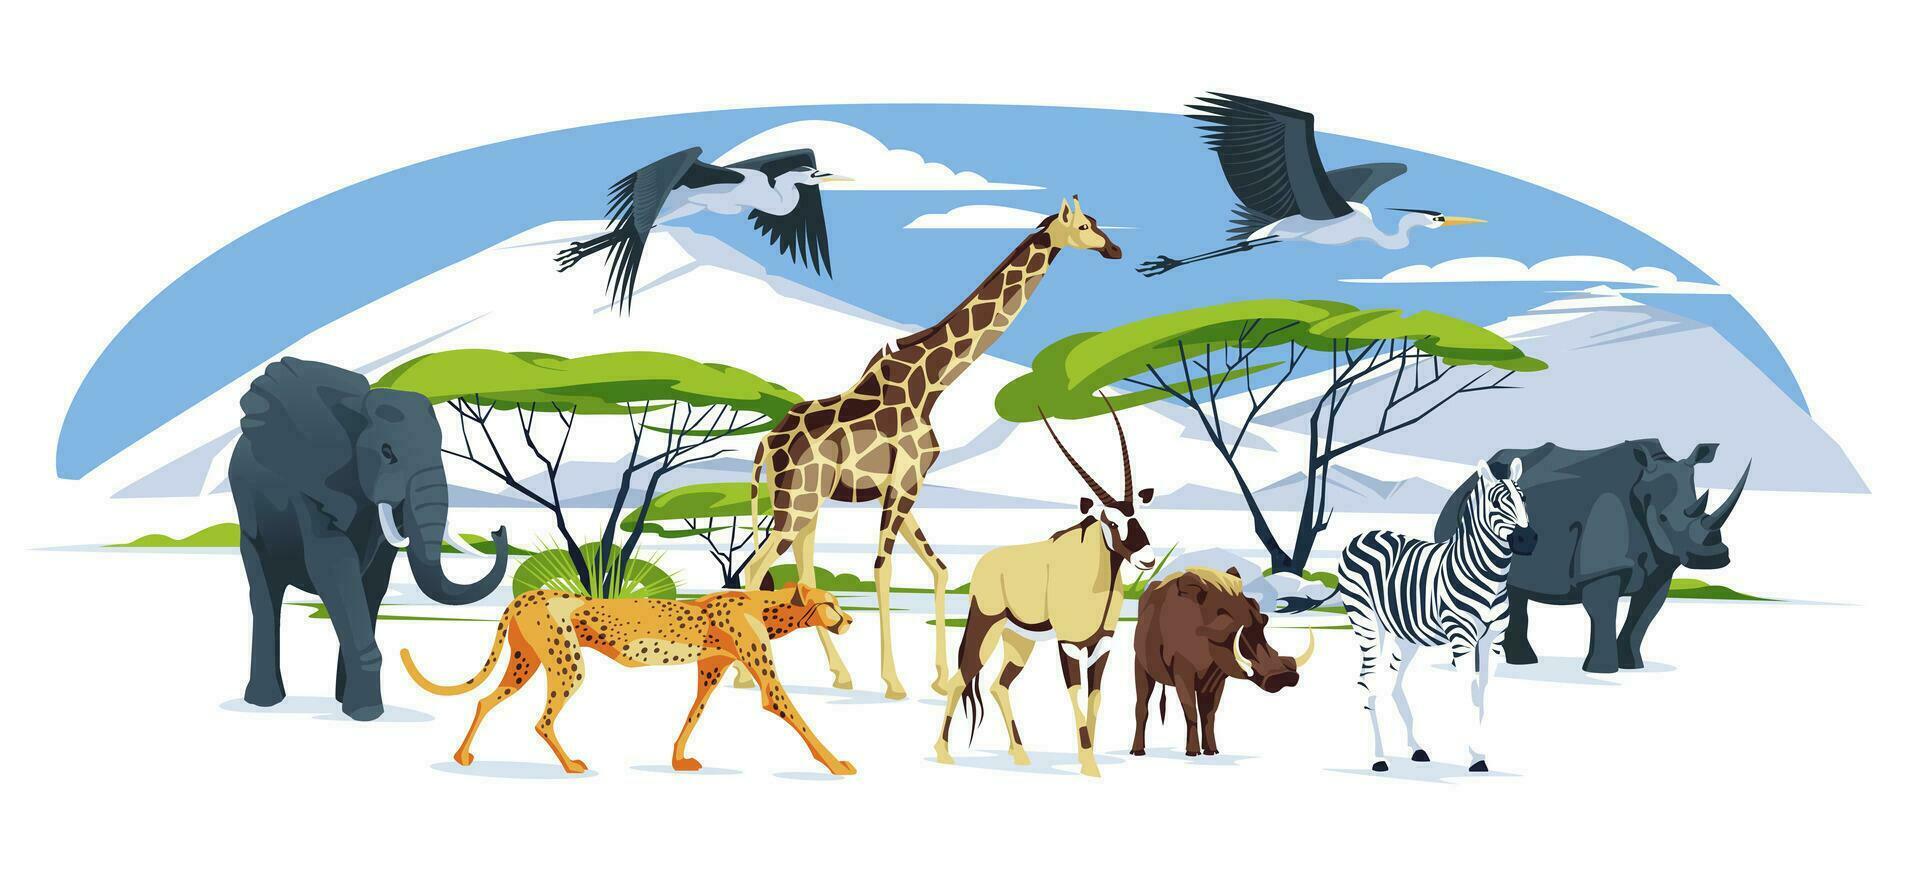 selvagem africano animais conjunto anda em em a savana panorama elefante, girafa, guepardo, órix antílope, zebra, avestruz, hipopótamo, hiena, javali, garça. vetor plano ilustração.